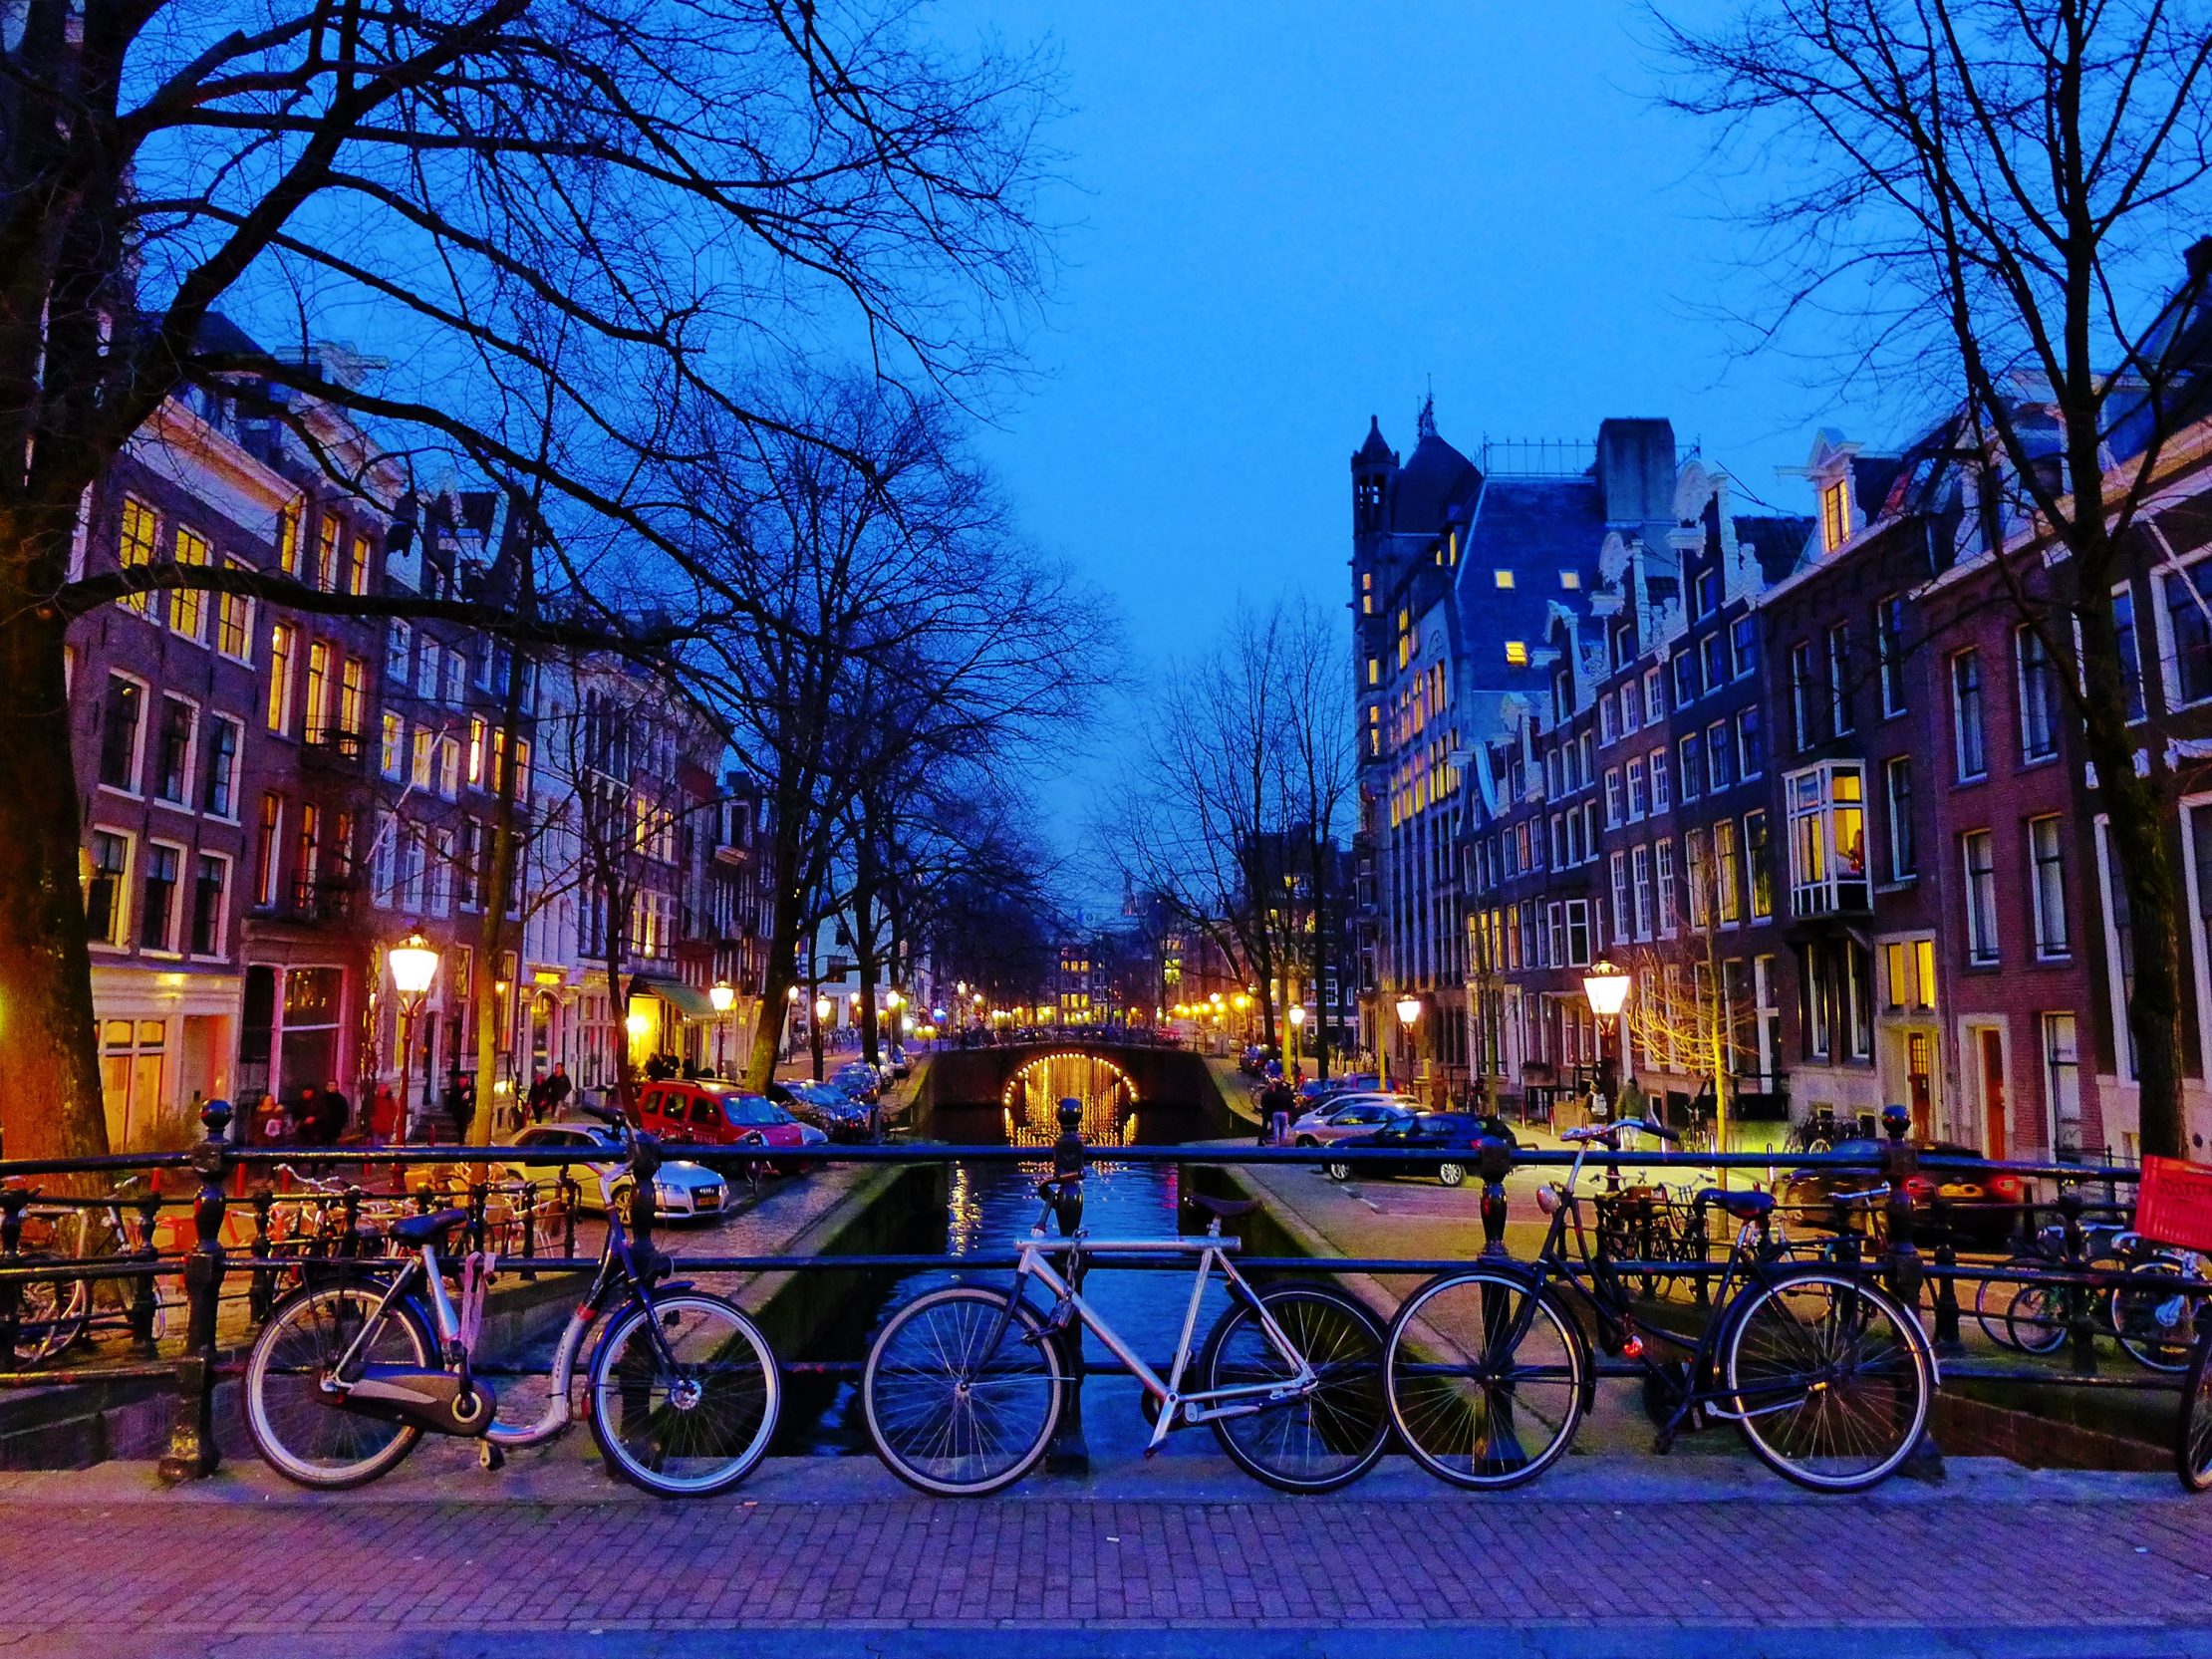 Biking around in Amsterdam